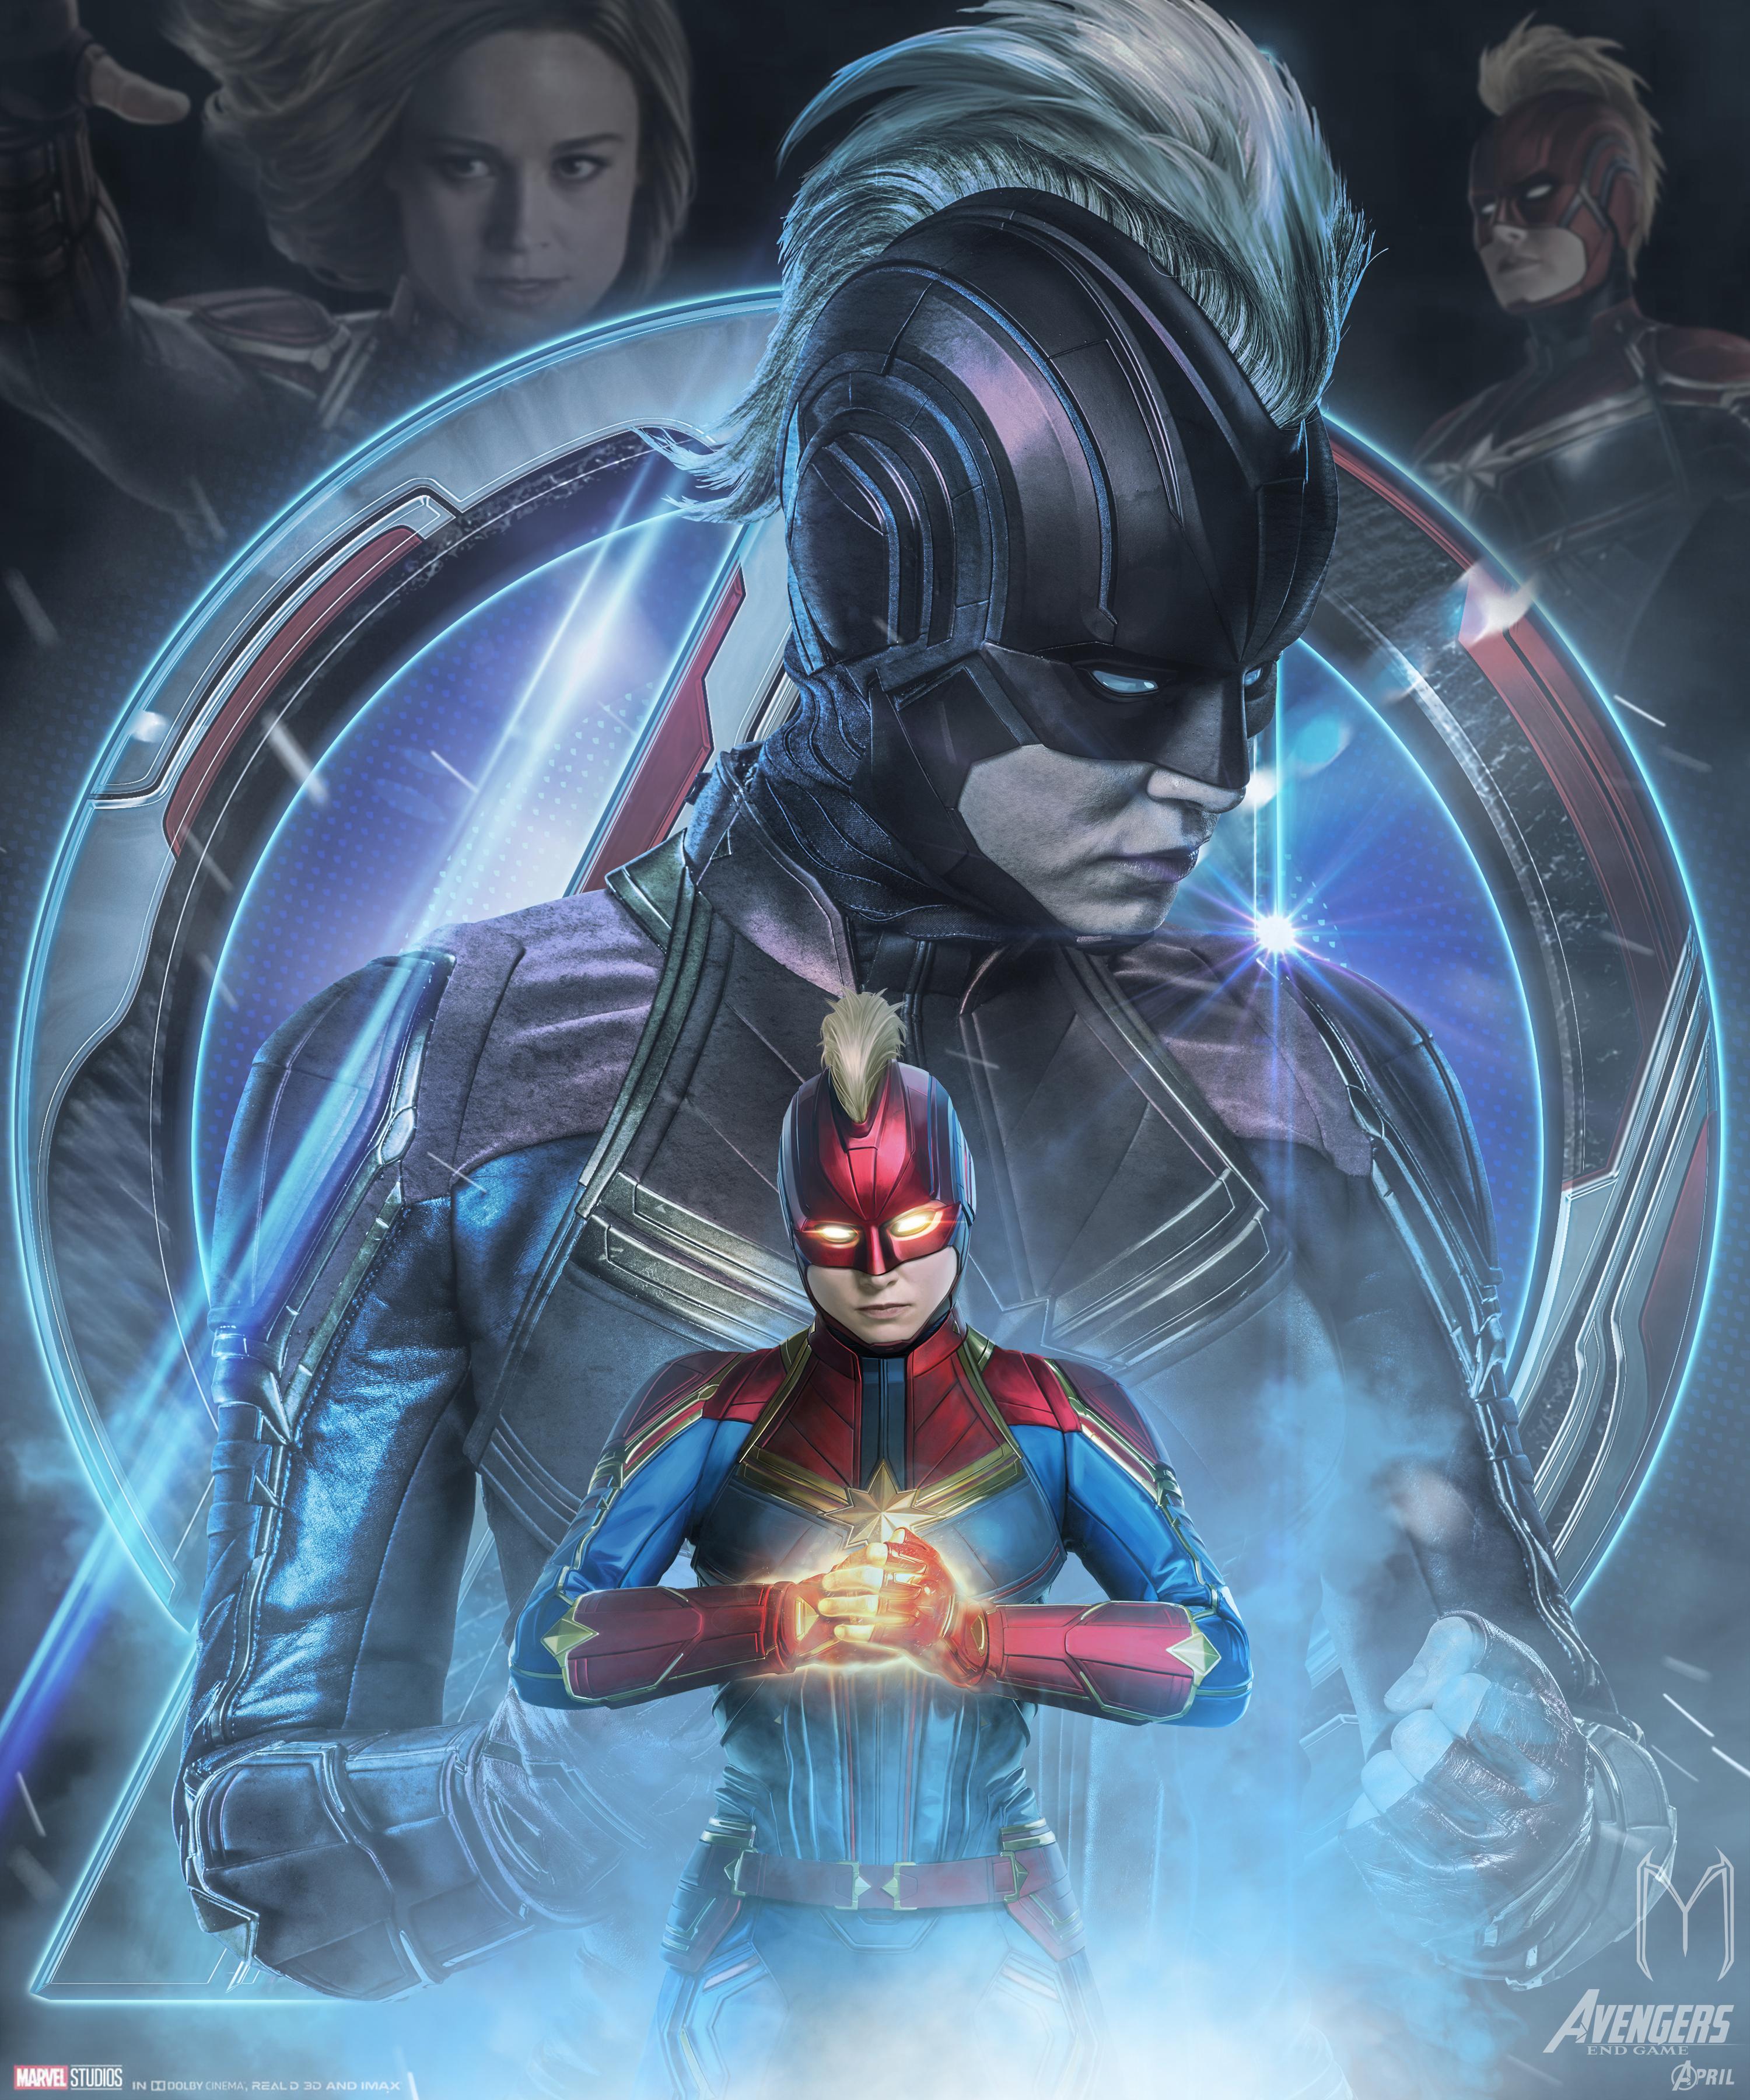 Free download Avengers Endgame Captain Marvel Poster Art